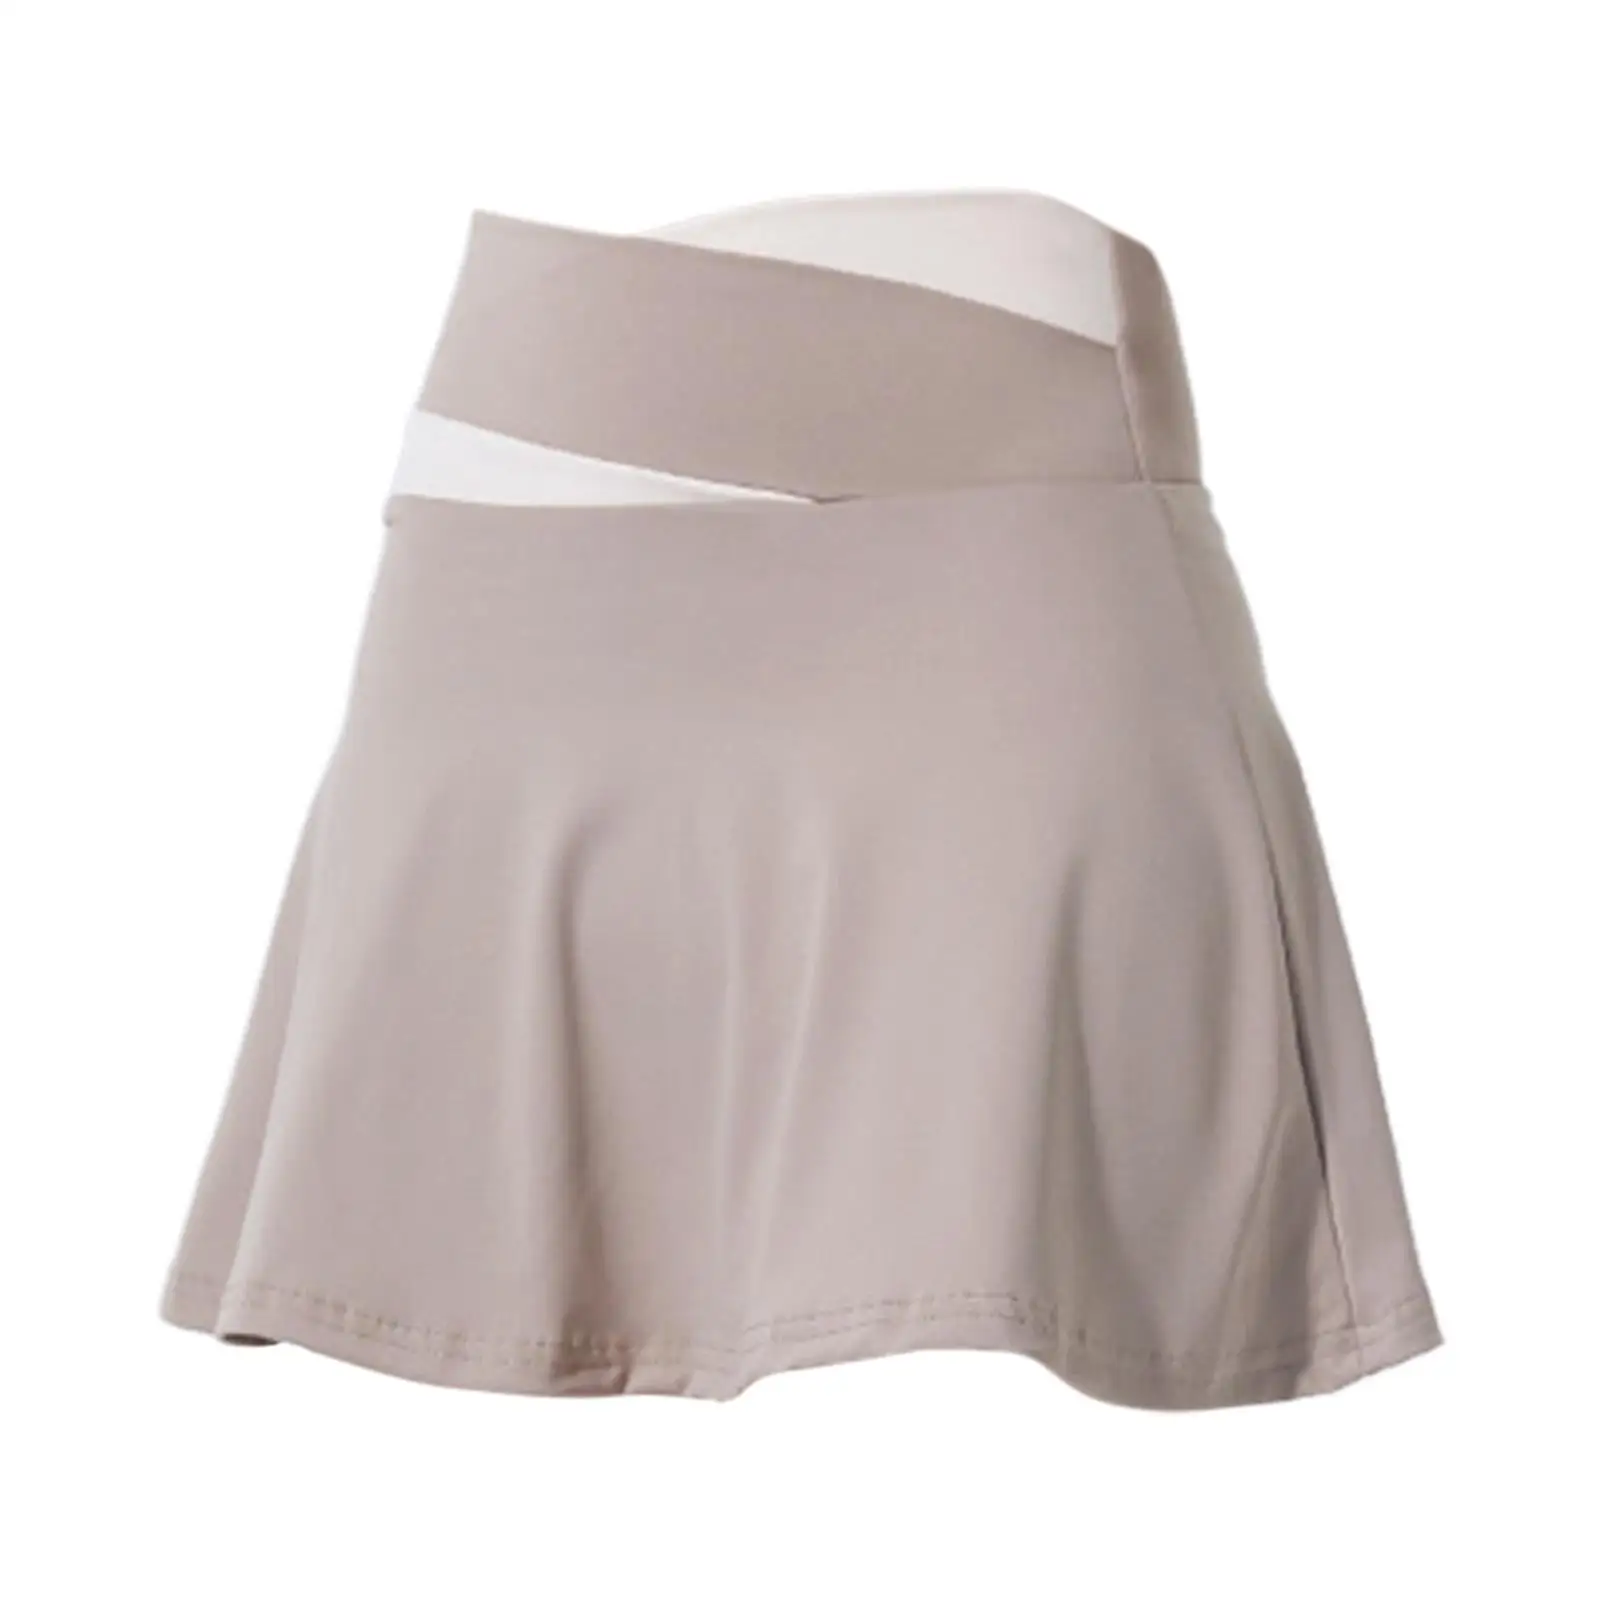 Tennis Skirts Short Skirts Mini Skirt Activewear Women`s Culottes Skirt Badminton Skirt for Golf Sports Exercise